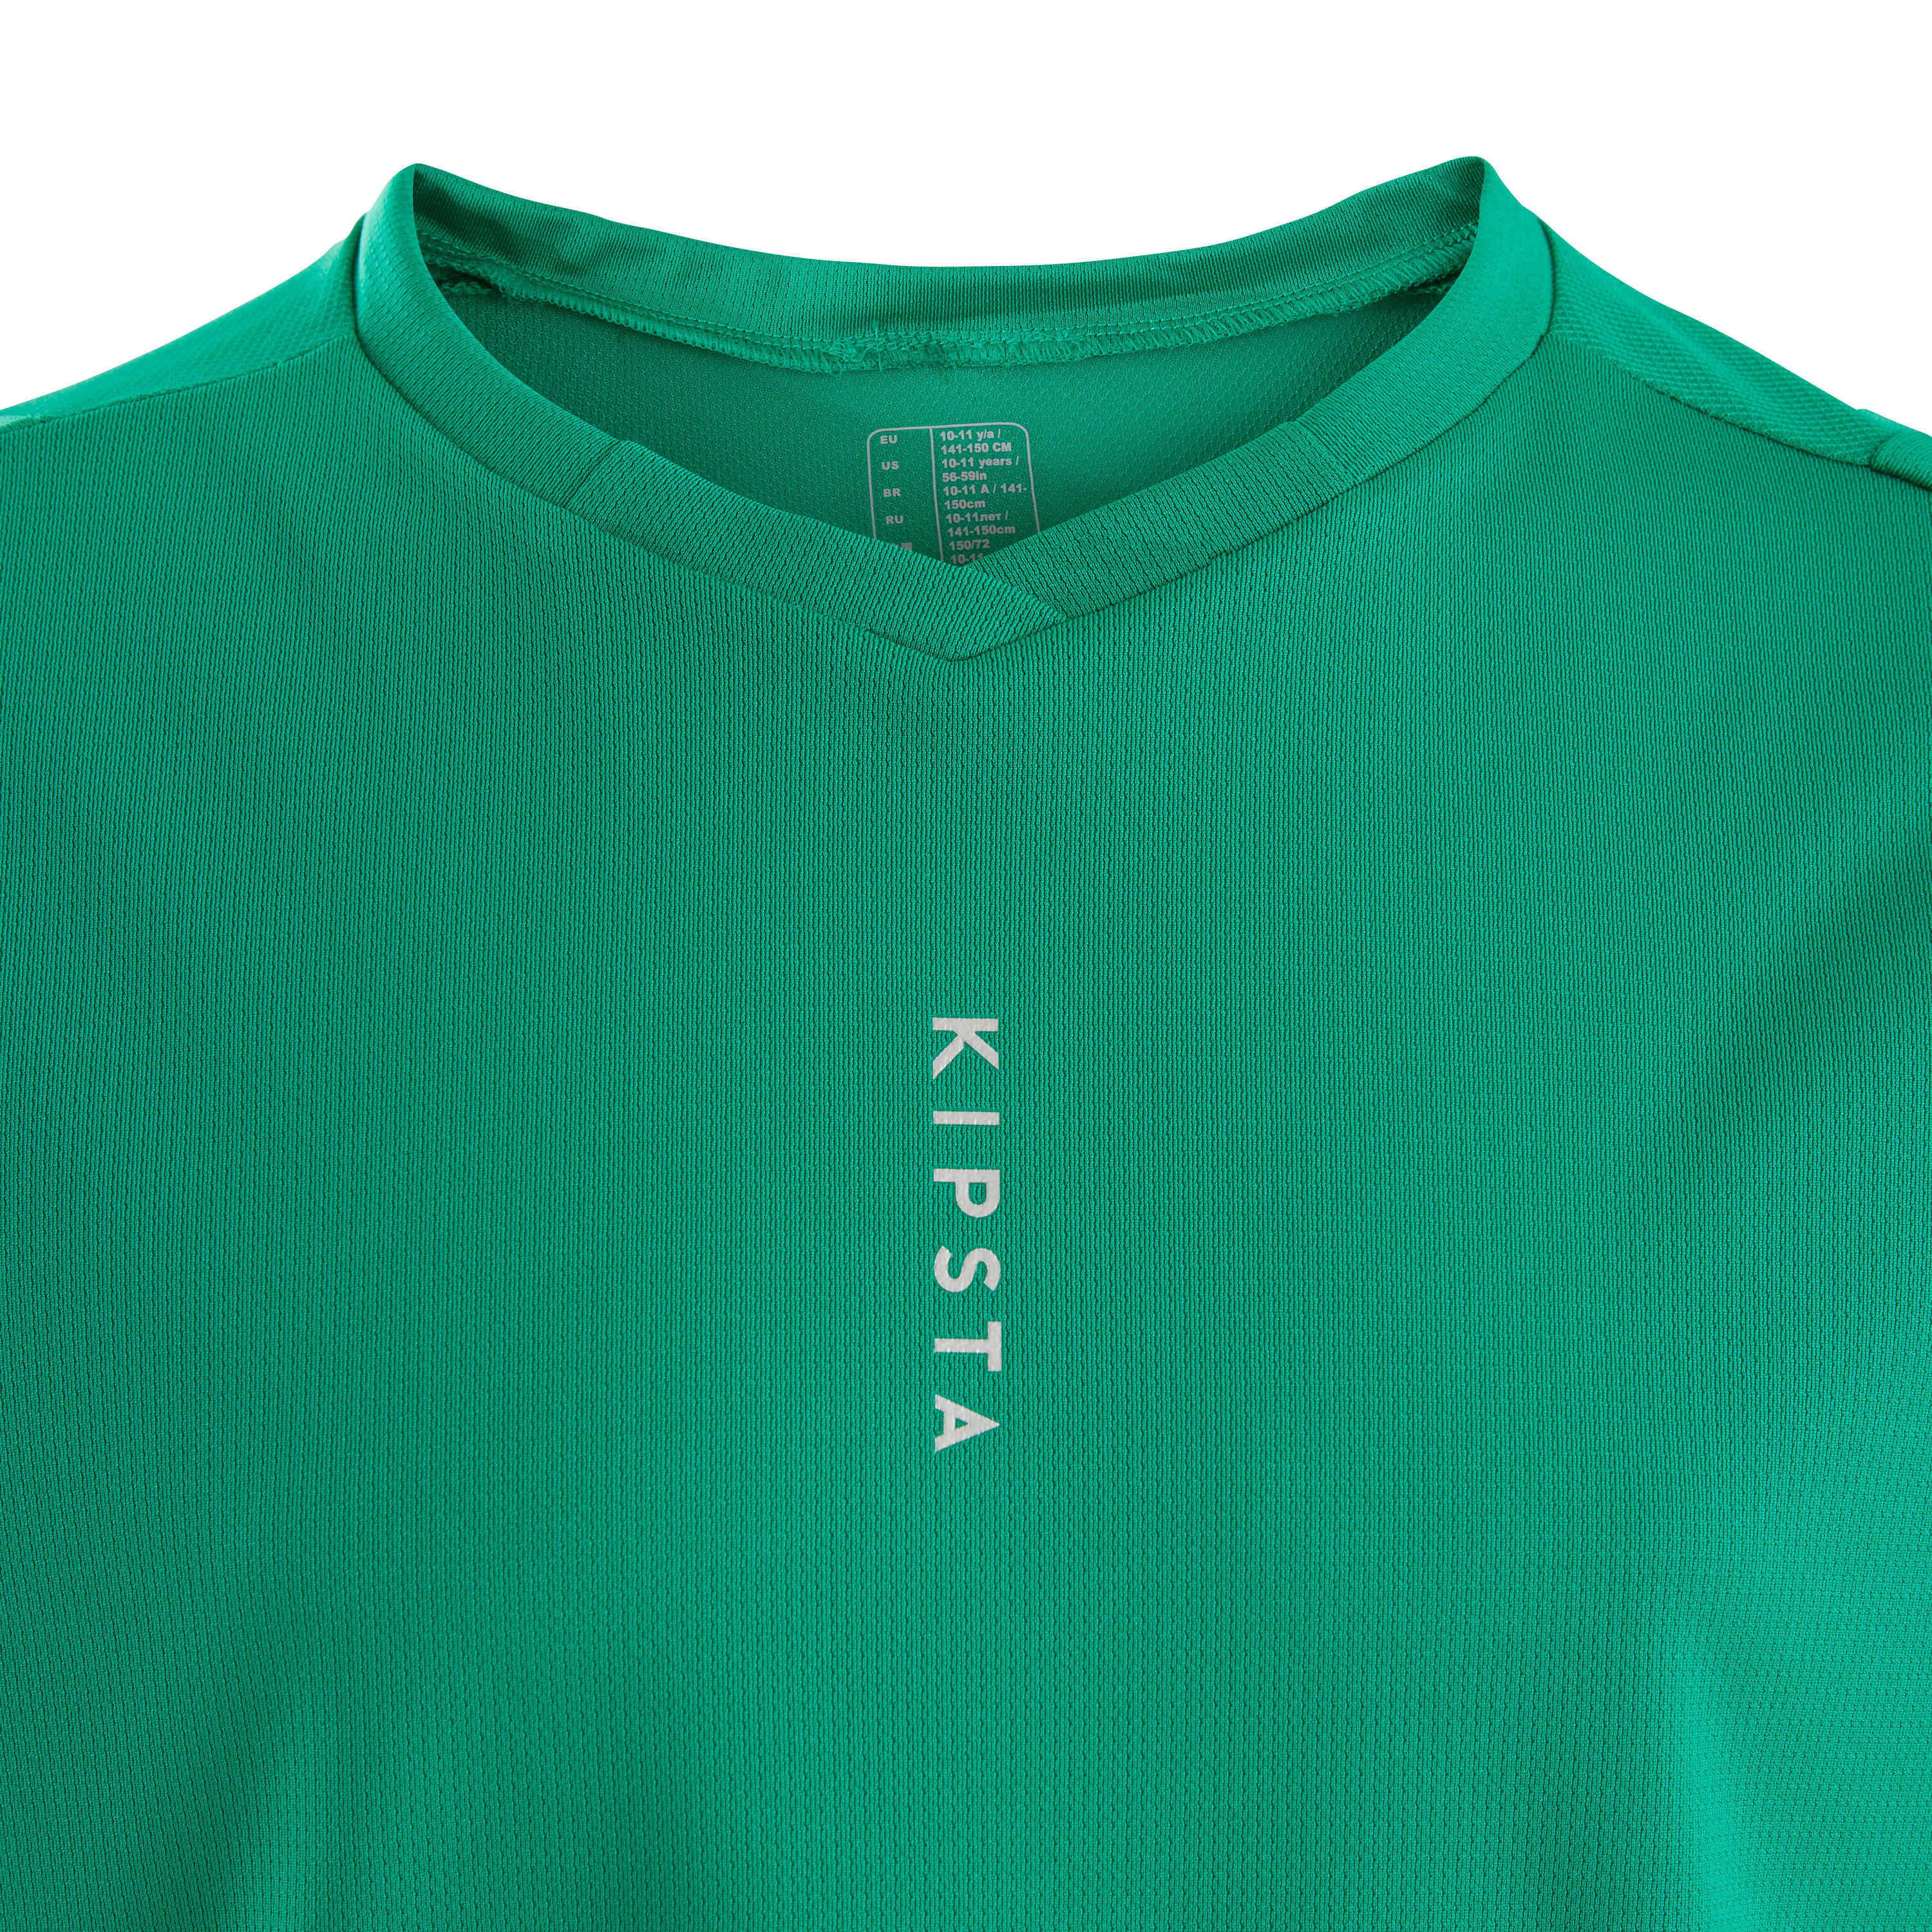 Kids' Short-Sleeved Football Shirt F500 - Plain Green 4/4